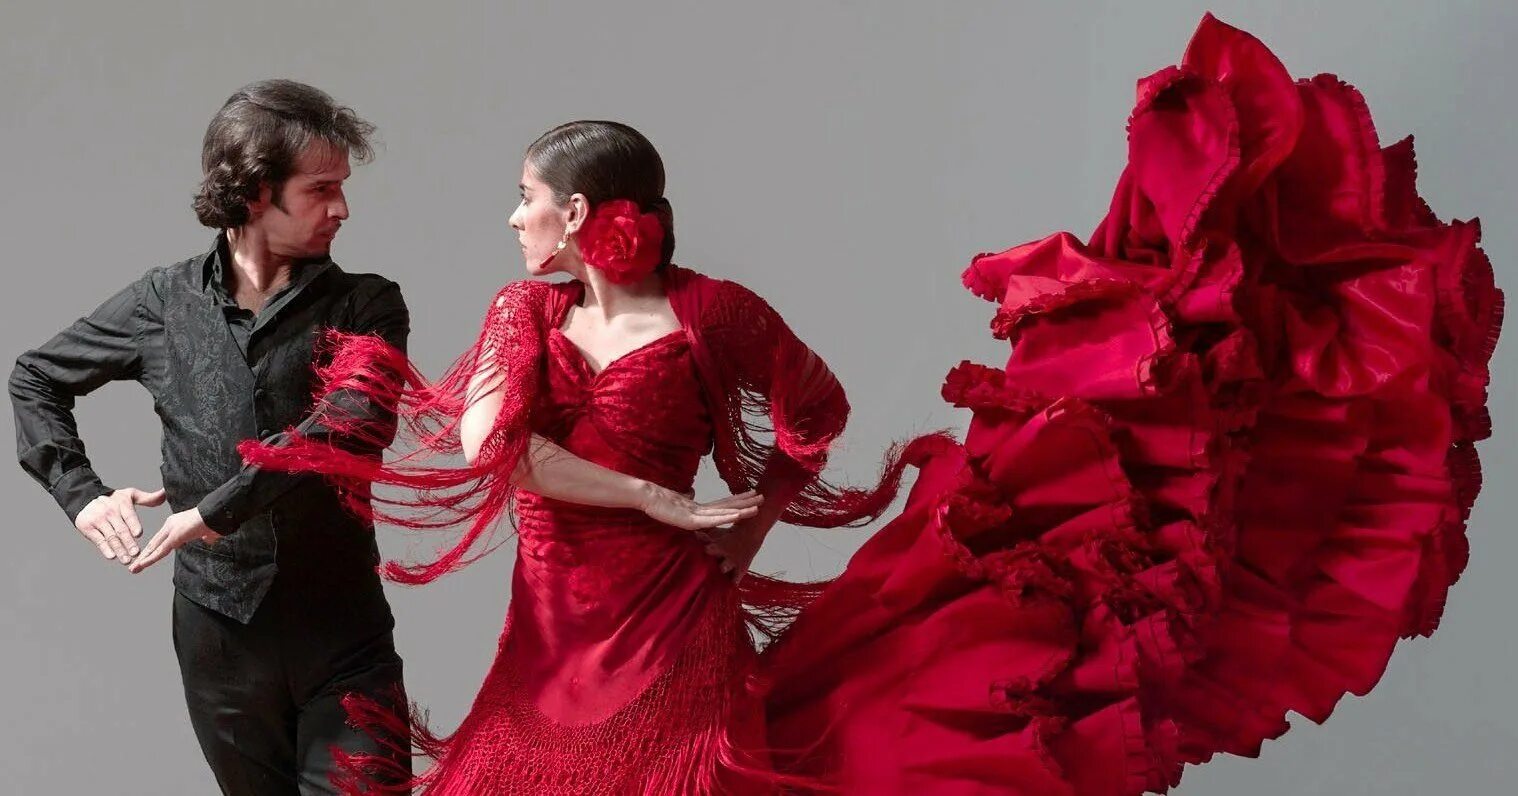 Карлос Саура фламенко. Фанданго фламенко. Испанский ансамбль фламенко. Танец фламенко испанский танец.